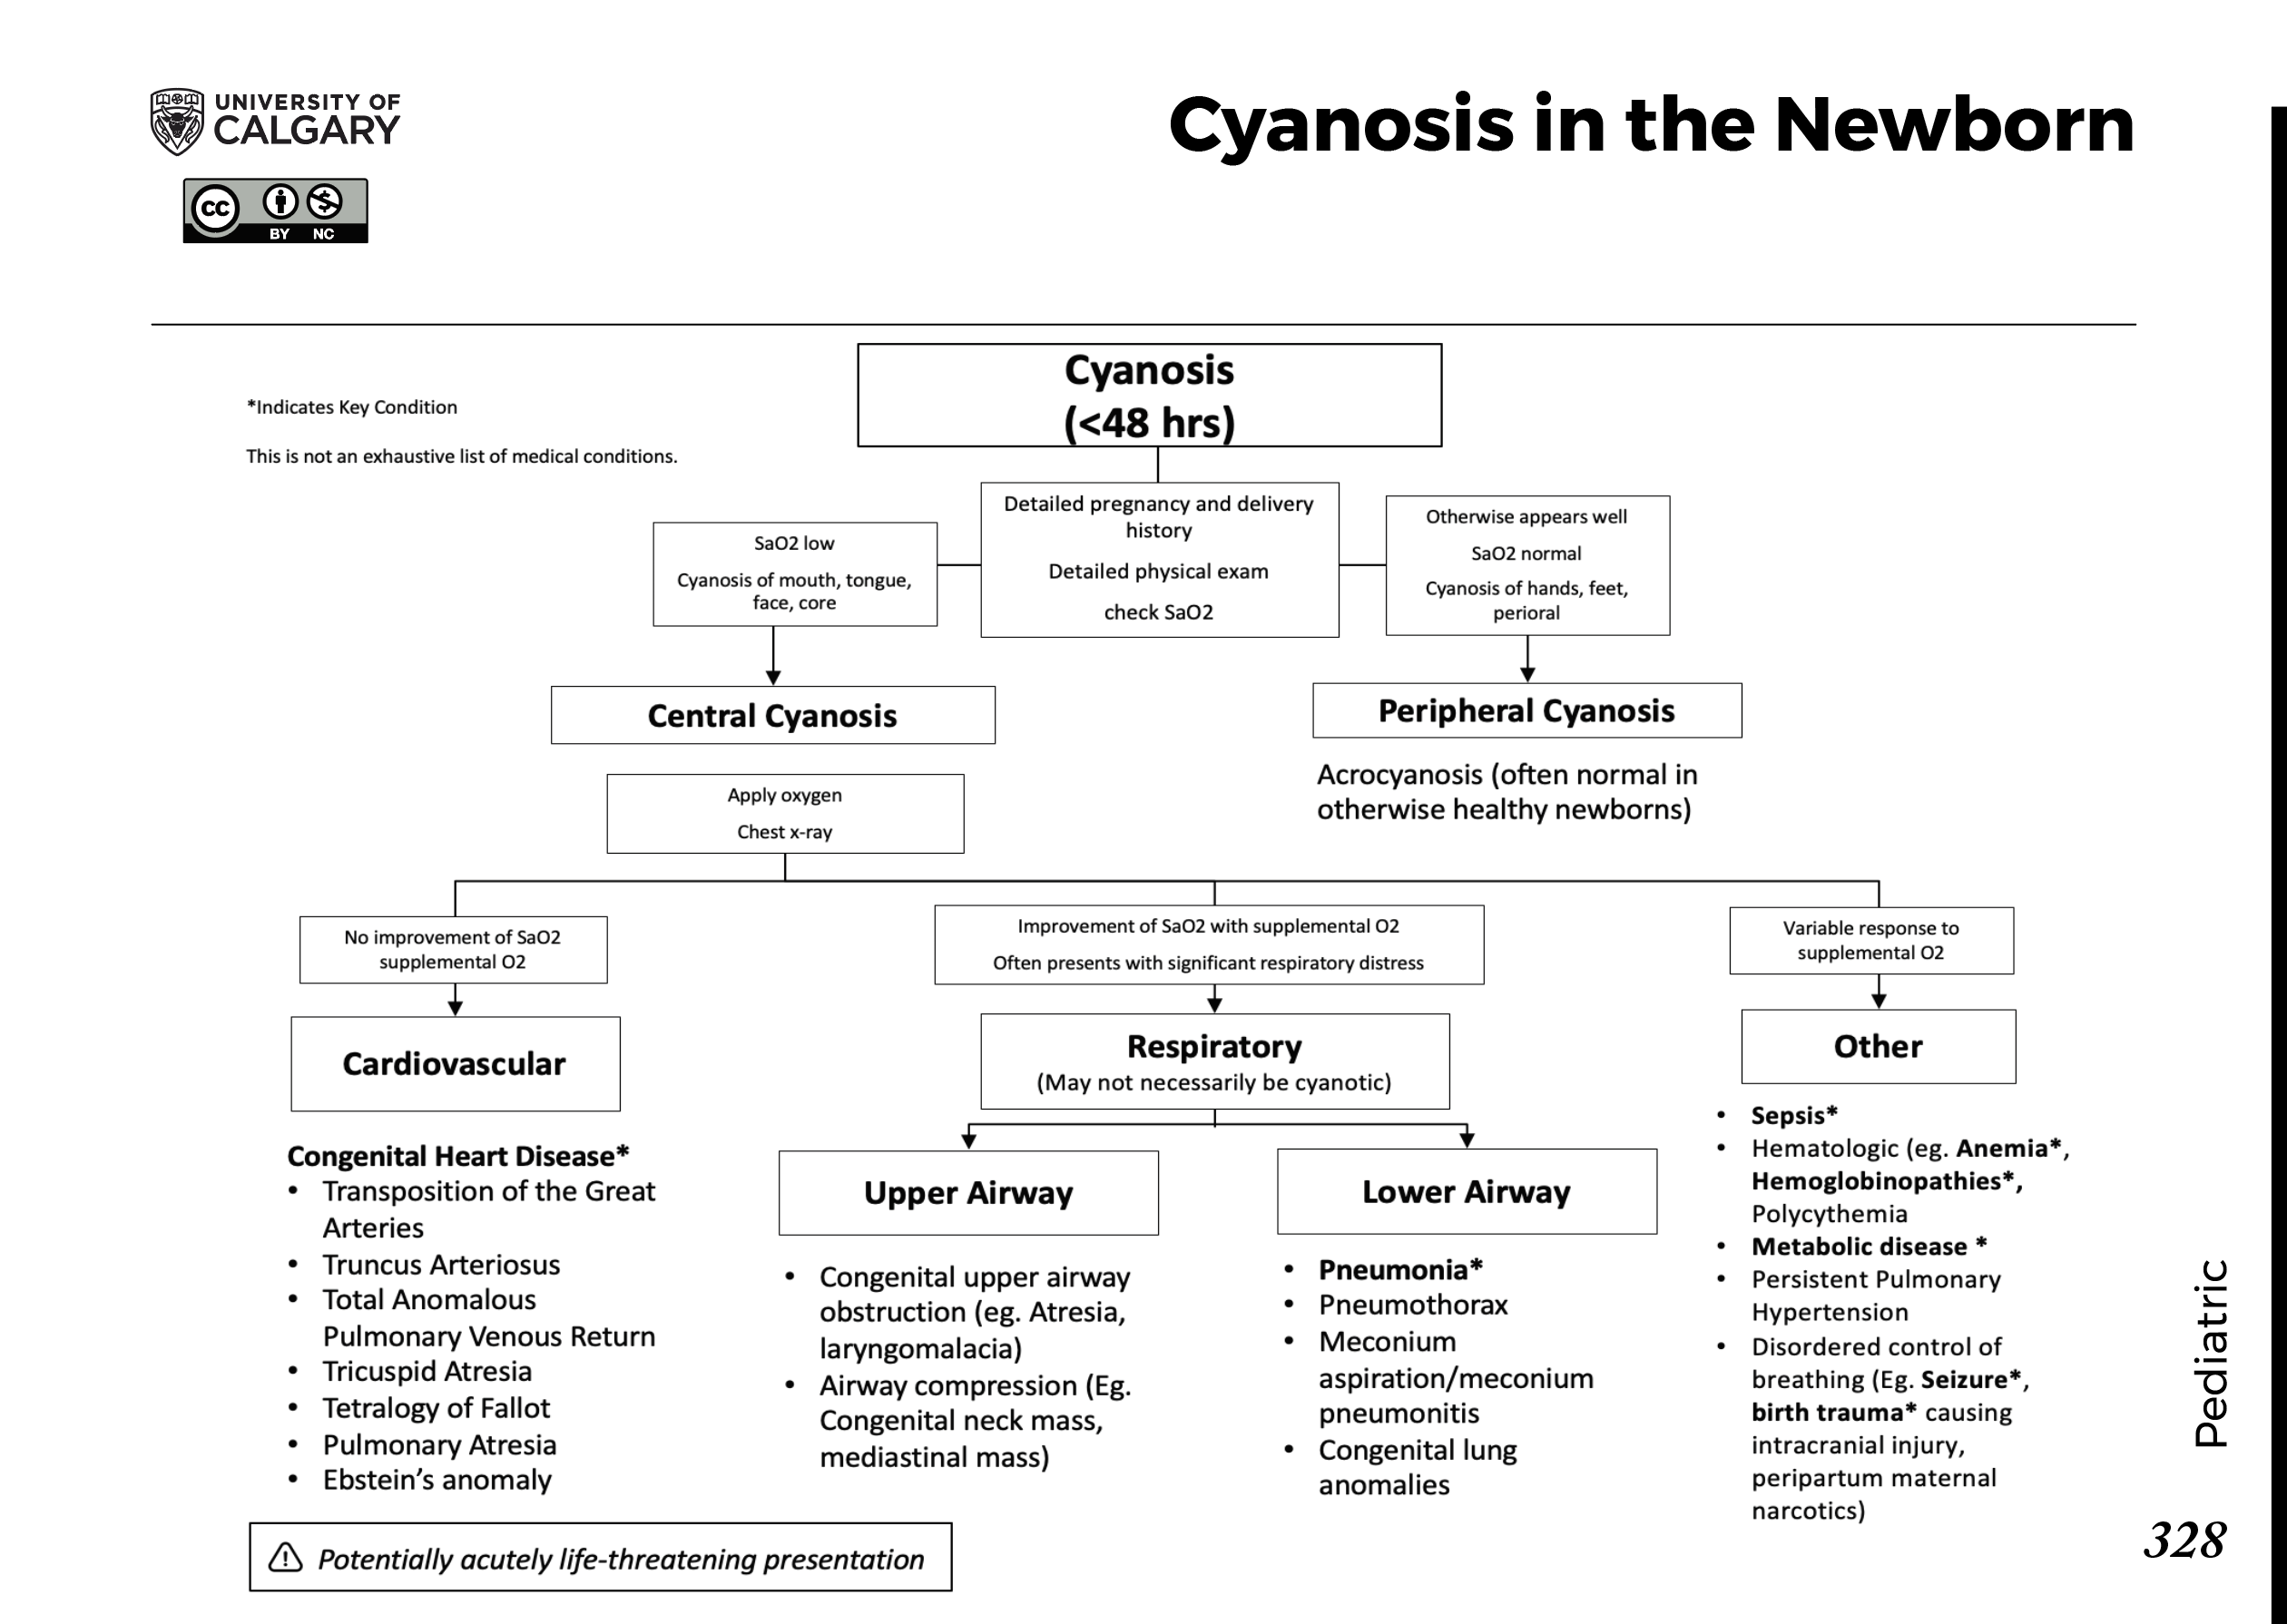 CYANOSIS IN THE NEWBORN Scheme